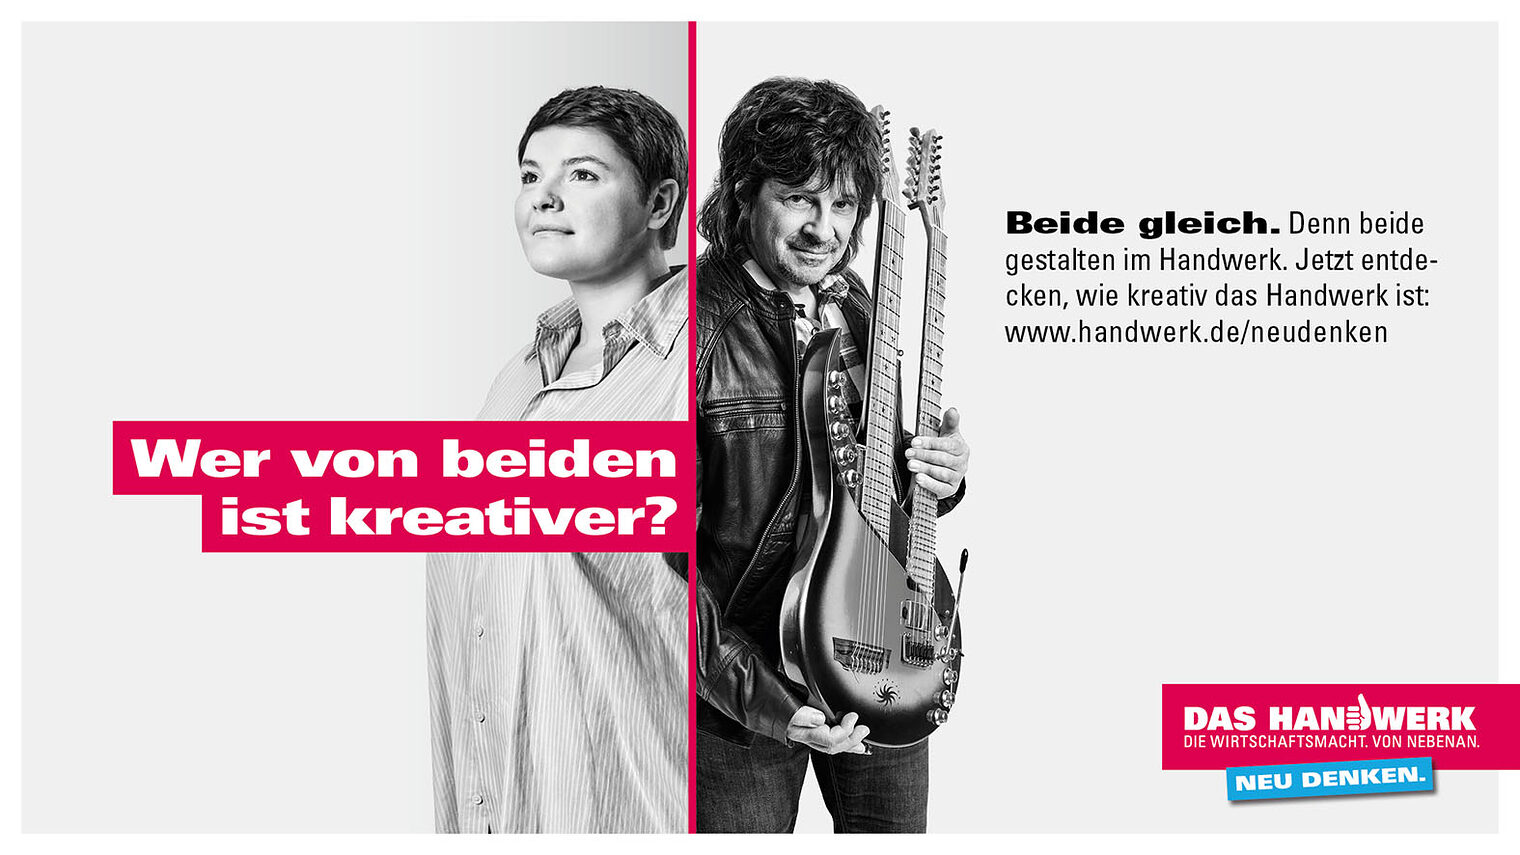 Plakatmotiv: Lina Reitz und Boris Dommenget gestalten beide im Handwerk.